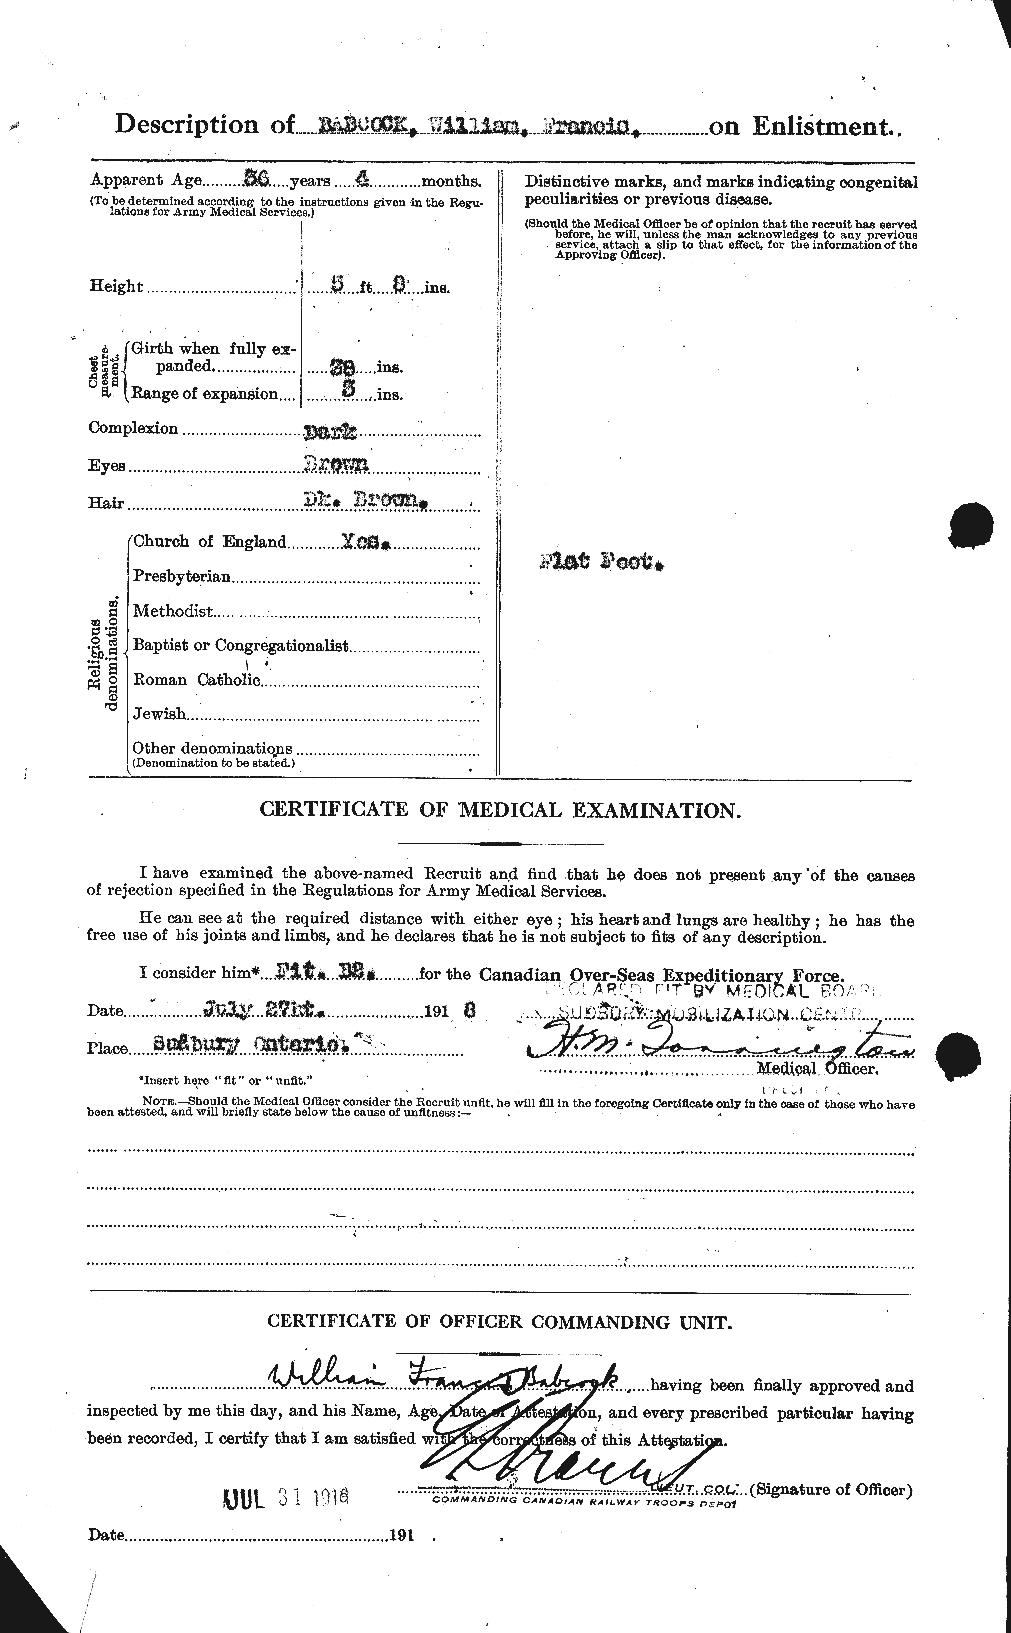 Dossiers du Personnel de la Première Guerre mondiale - CEC 218191b